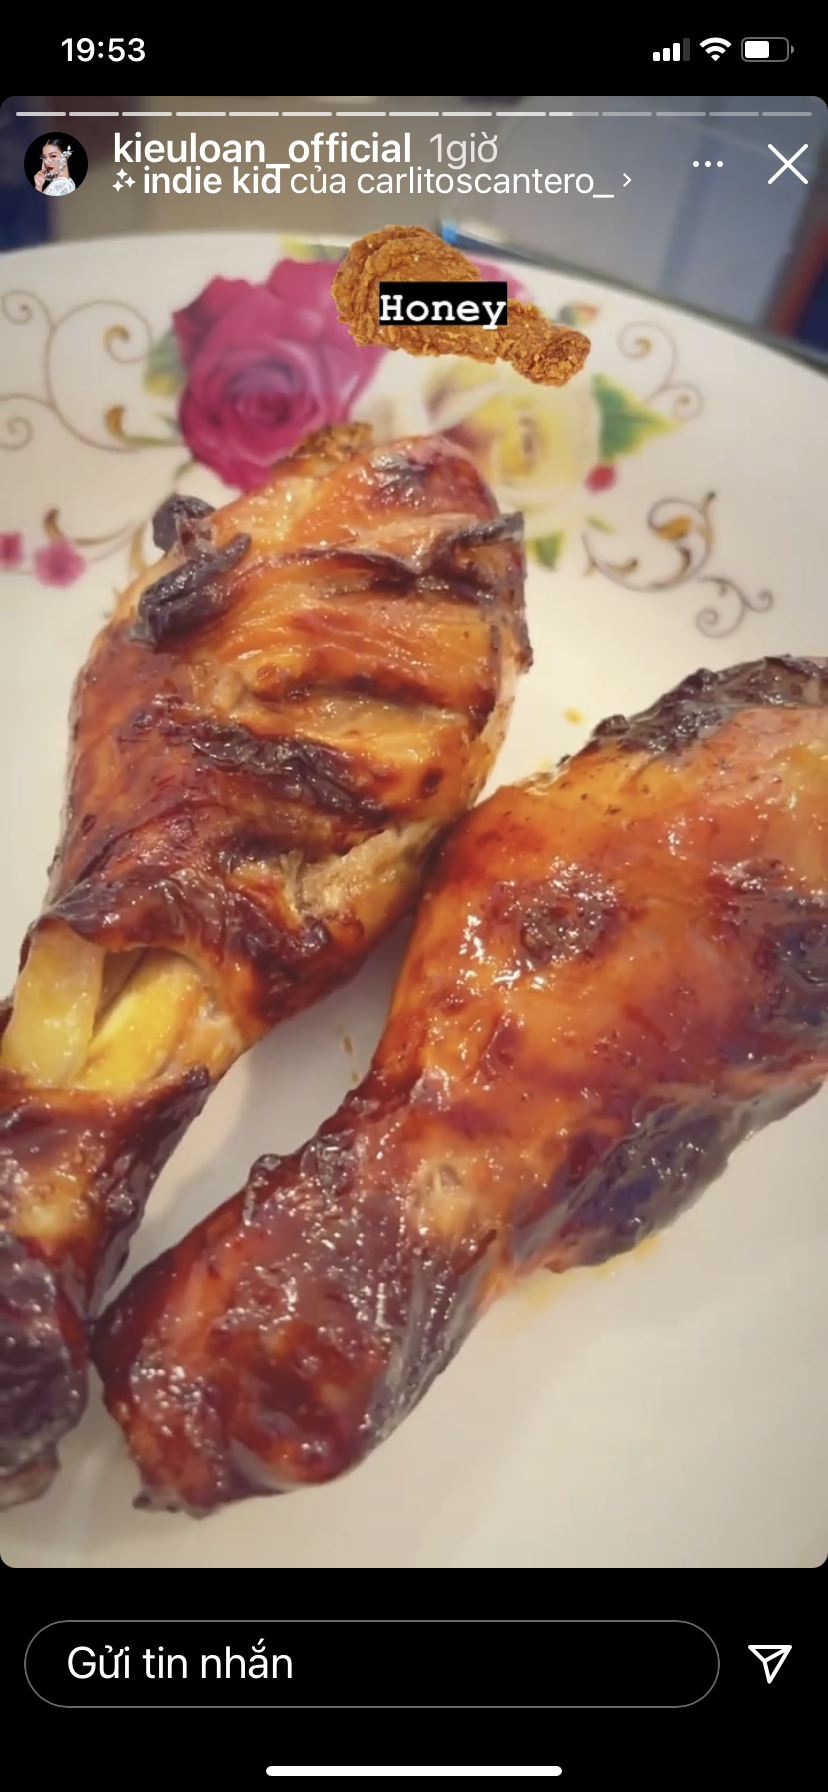 Đùi gà nướng mật ong là món ngon xuất hiện không bữa ăn nhà Á hậu Kiều Loan.